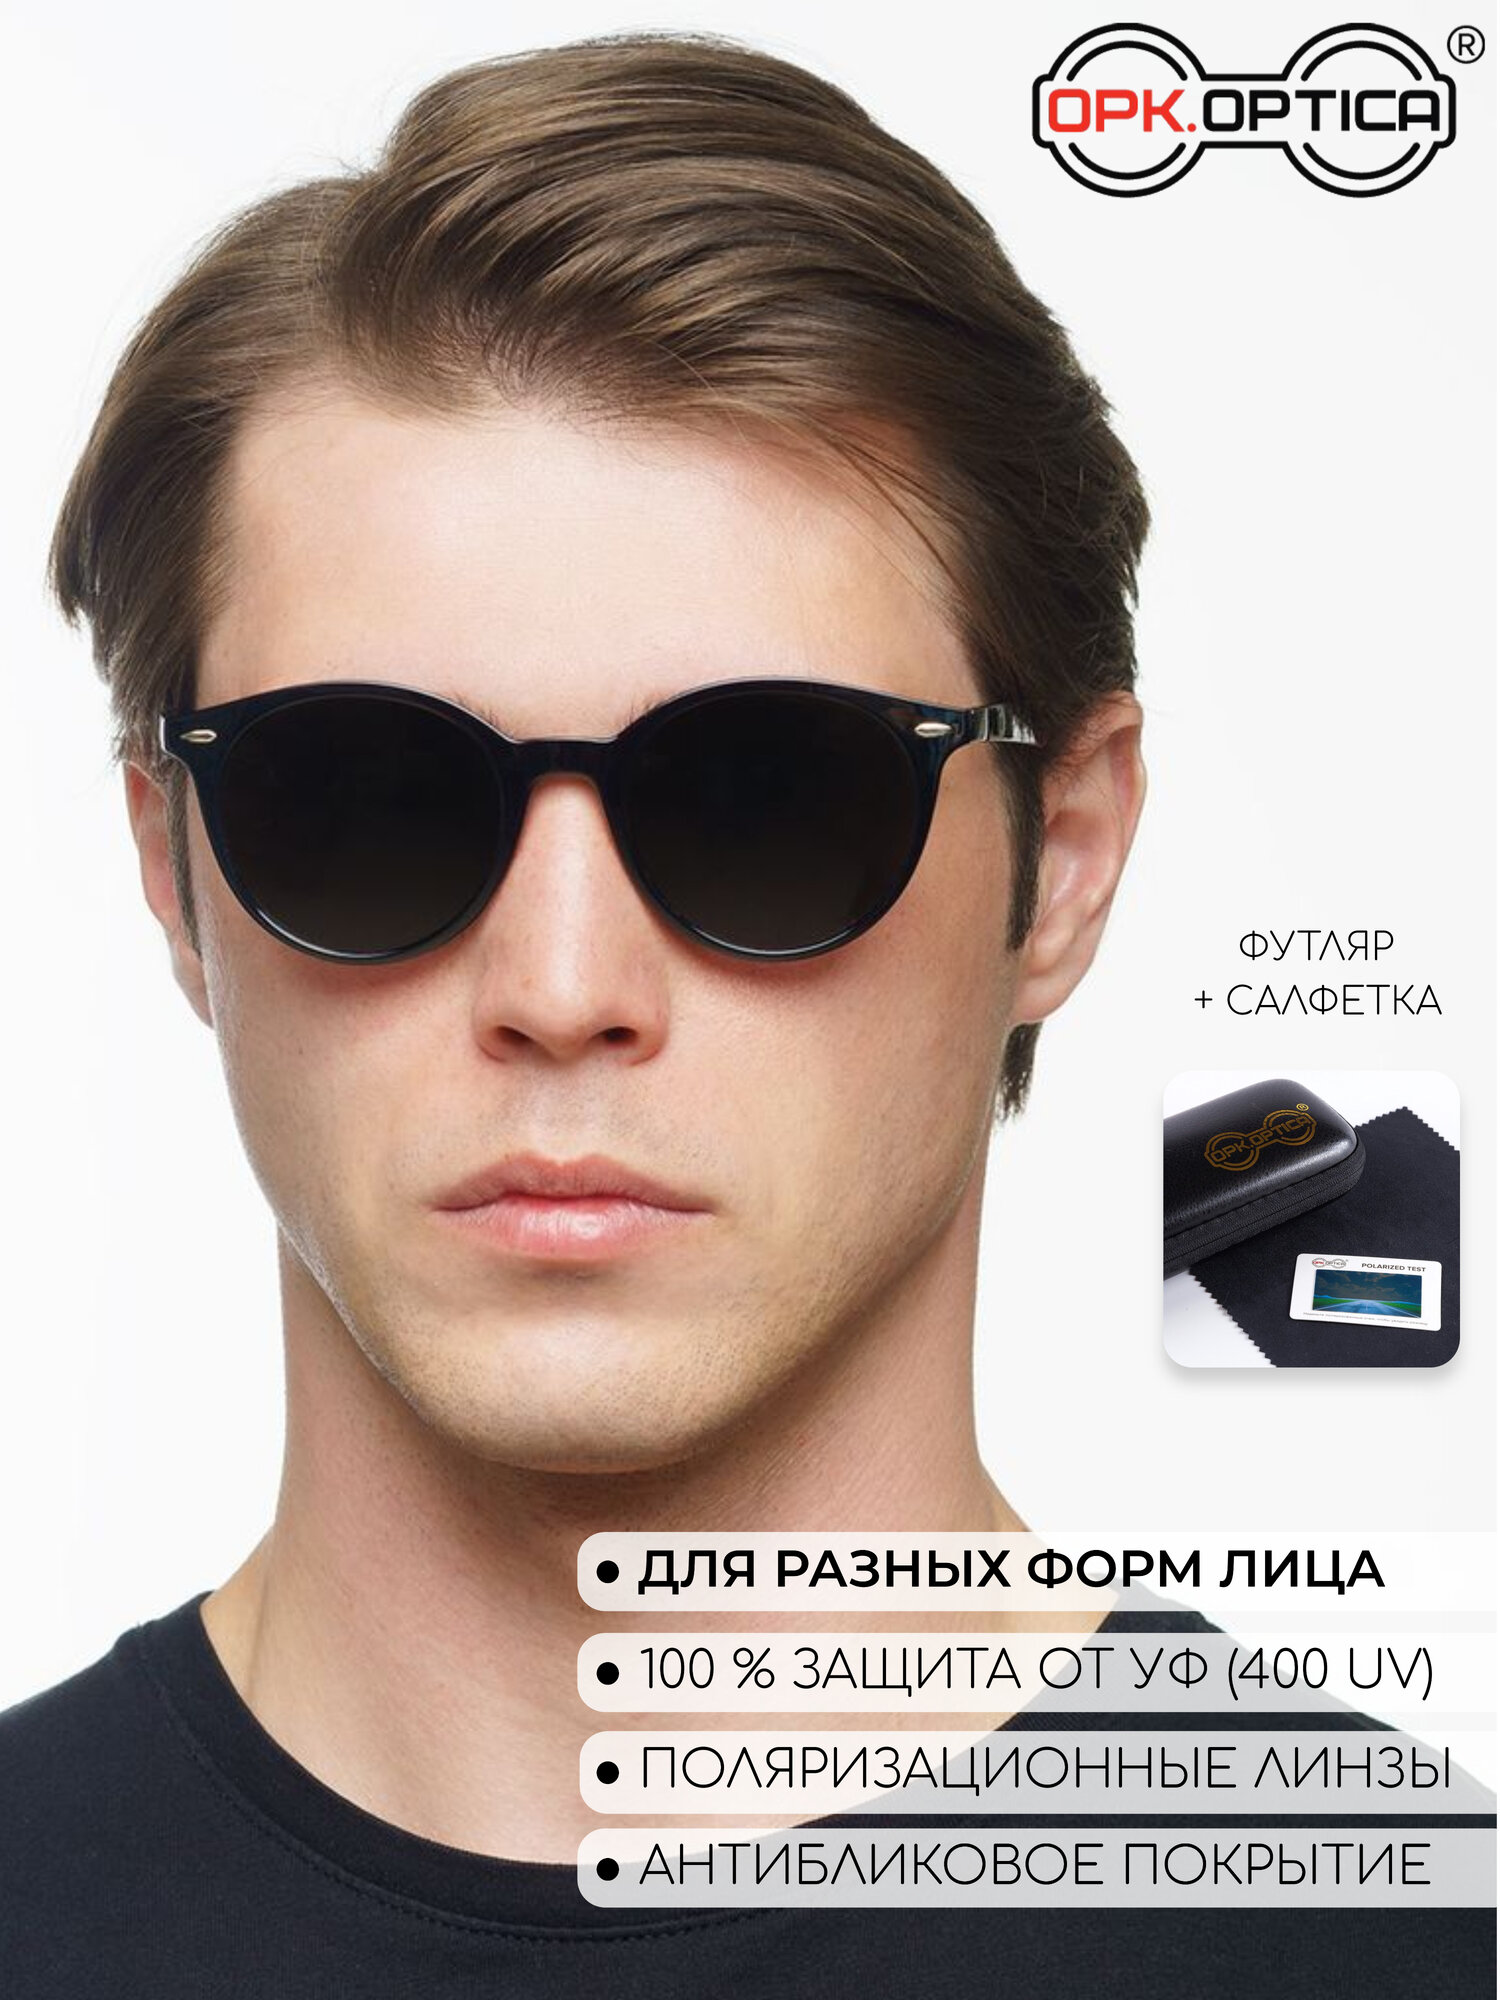 Солнцезащитные очки OPKOPTICA OPK-0032с1 OPK-0032с1, черный